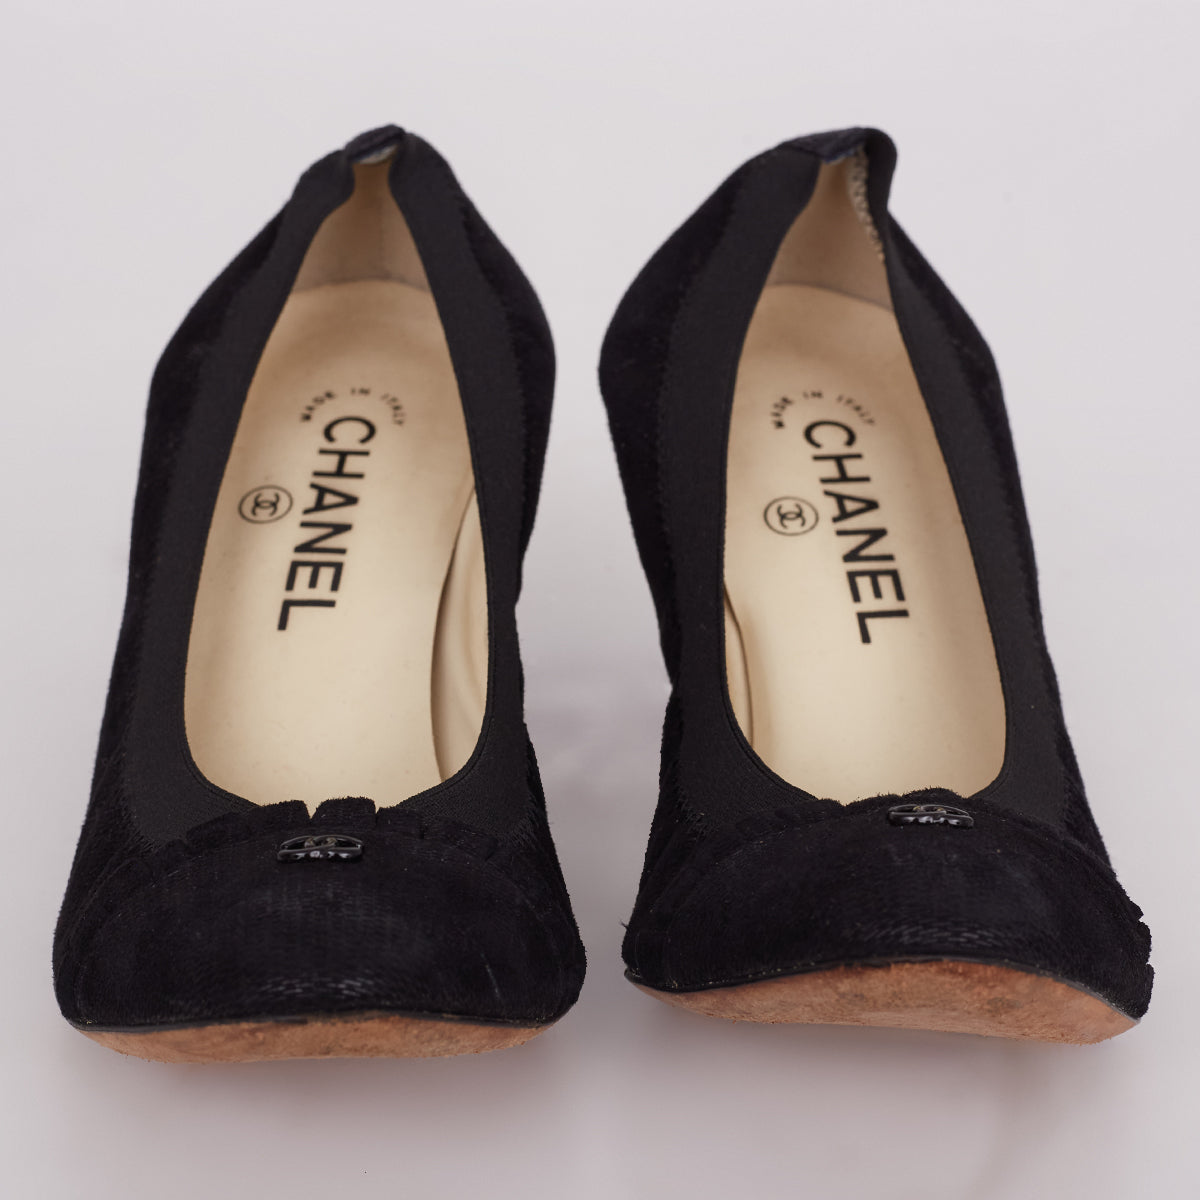 Sapato Chanel Preto c/ Elástico Tam. 37,5 Br